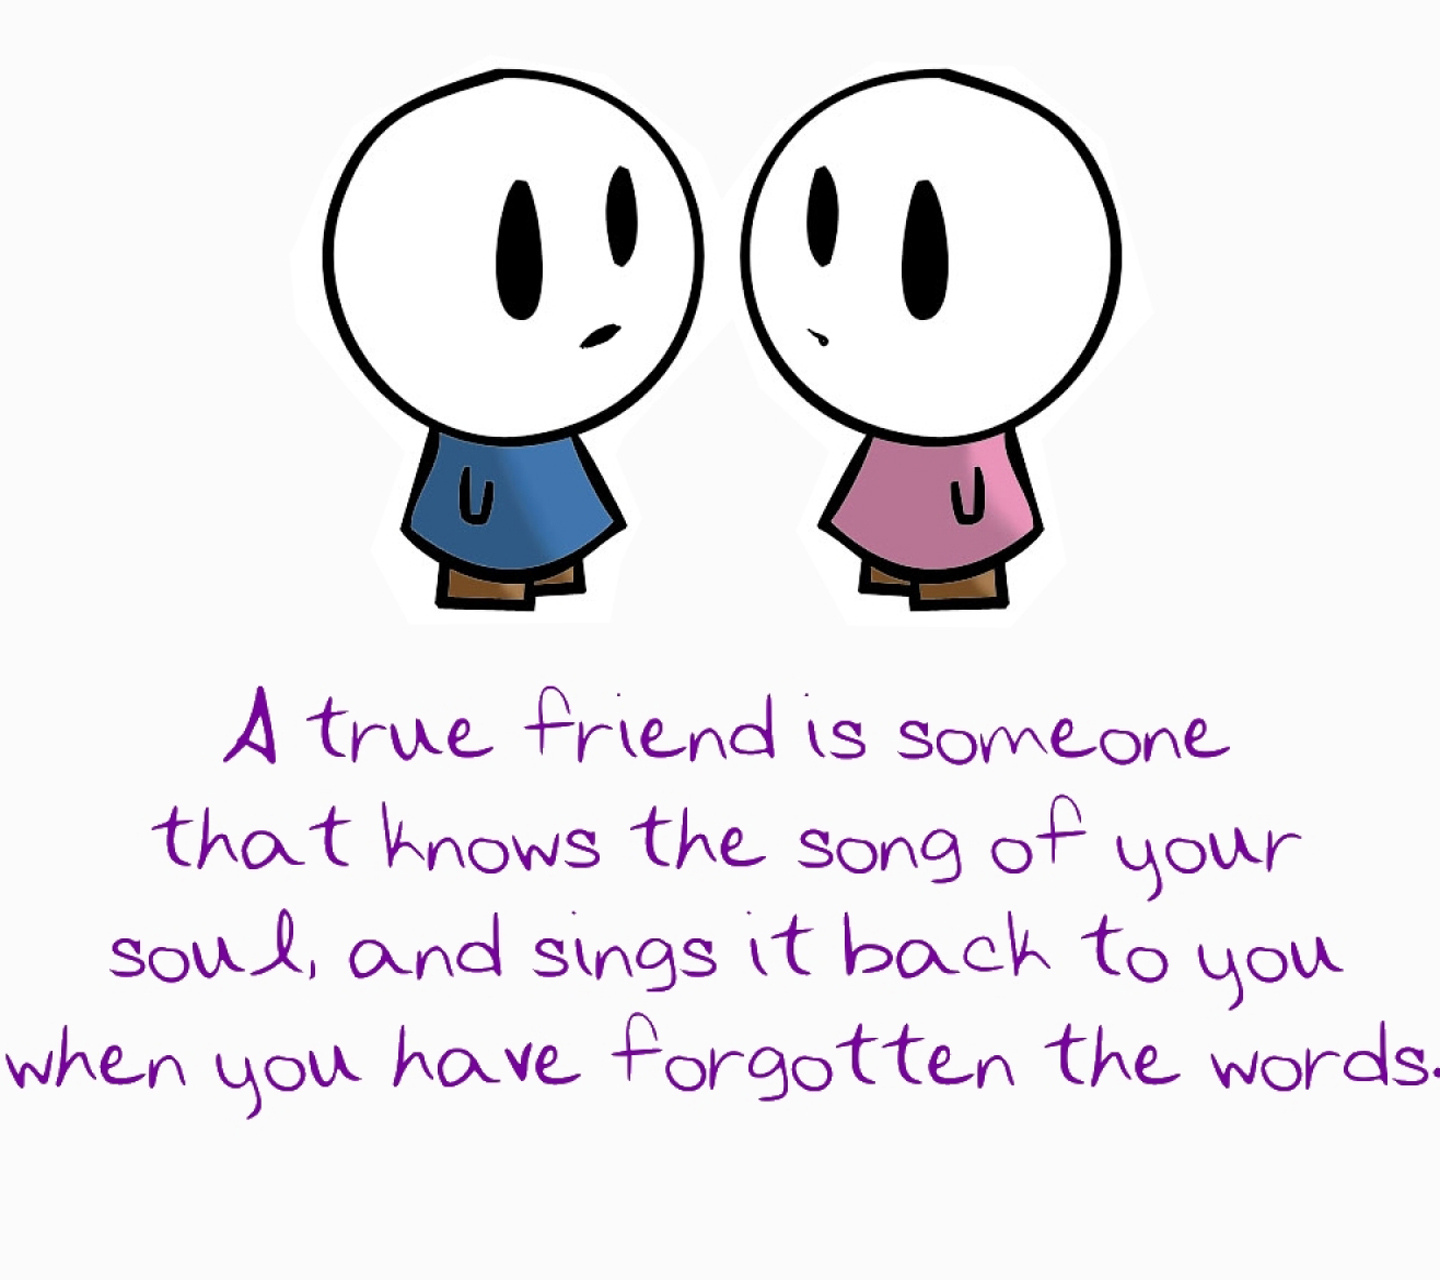 My true friend. True Friendship. Friendship Word. Friend quotes for Kids. Love Spring Friendship картинка.